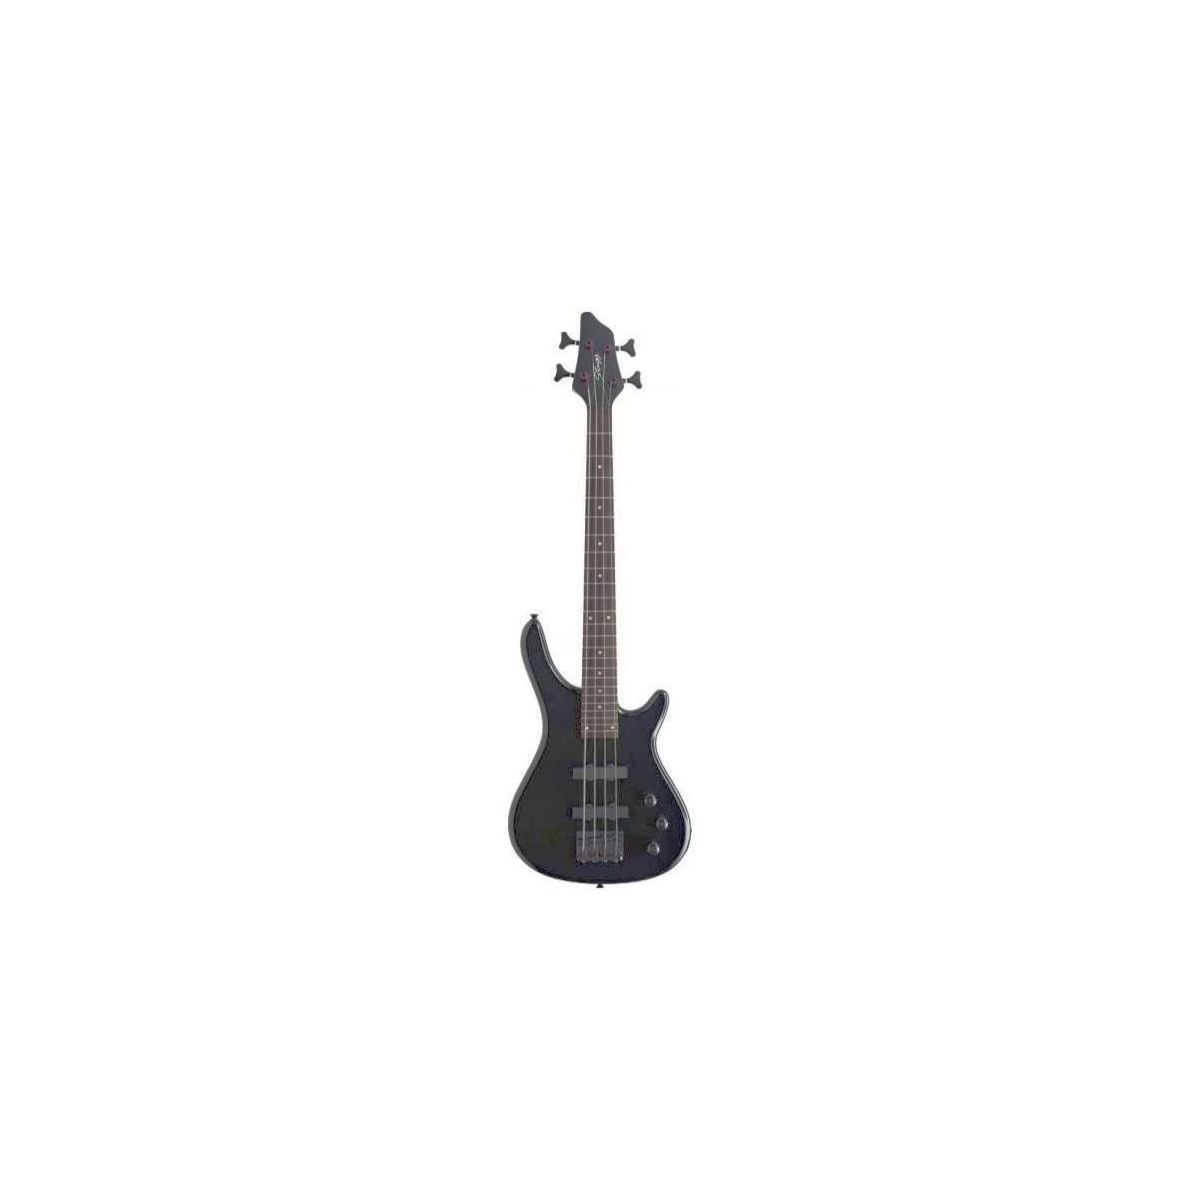 Stagg BC300 3/4 BK Guitare électrique basse "Fusion", 4 cordes - modèle